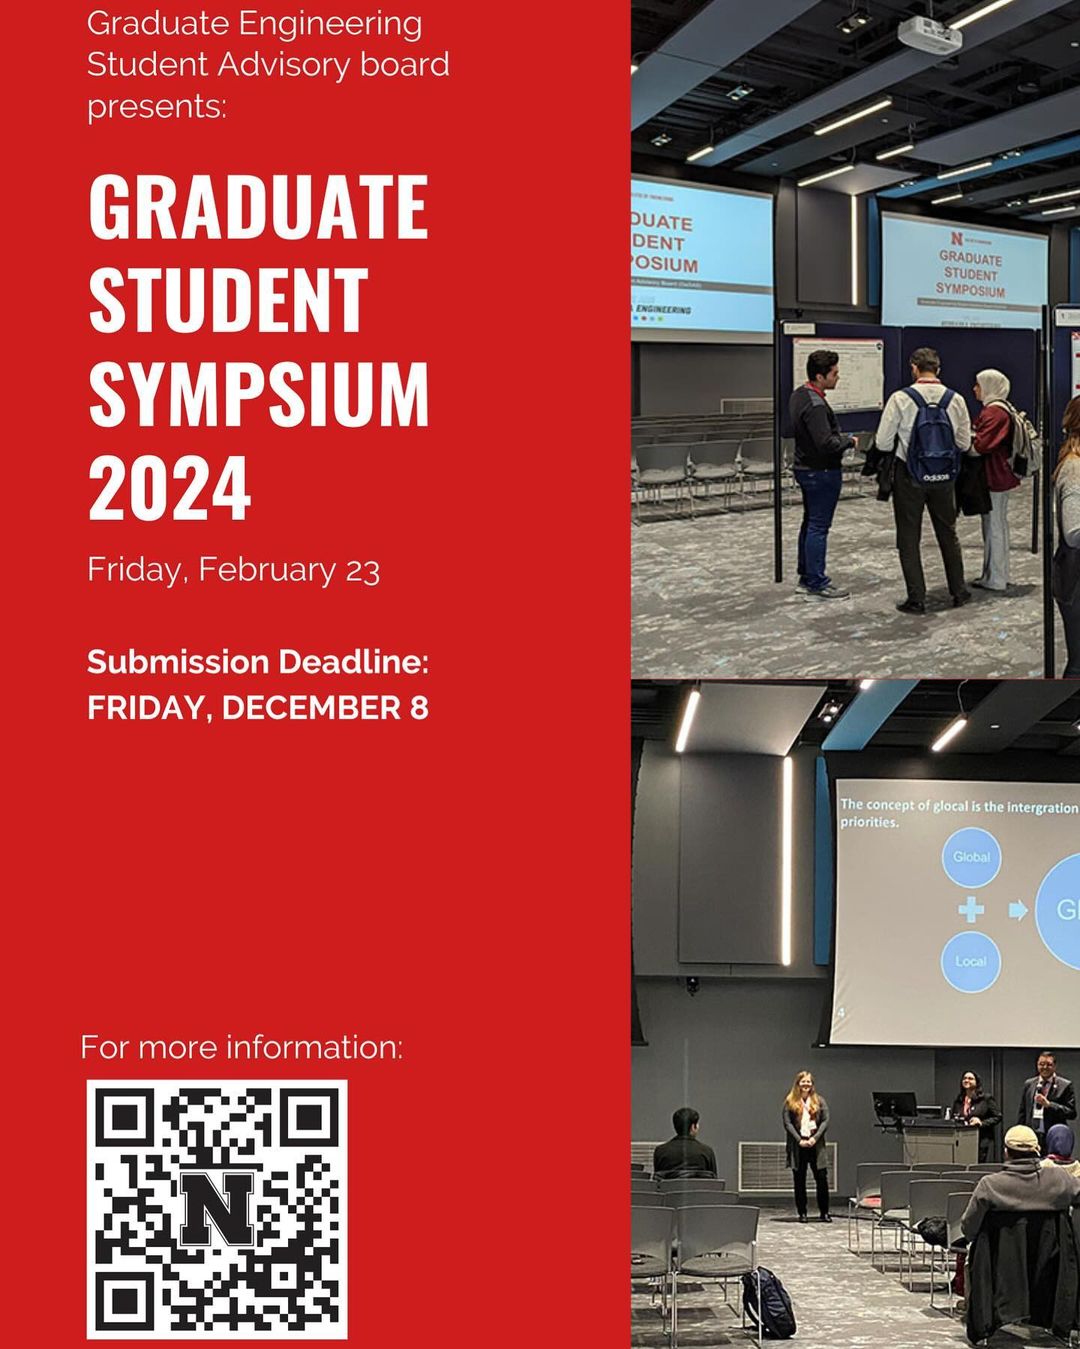 The Graduate Student Symposium